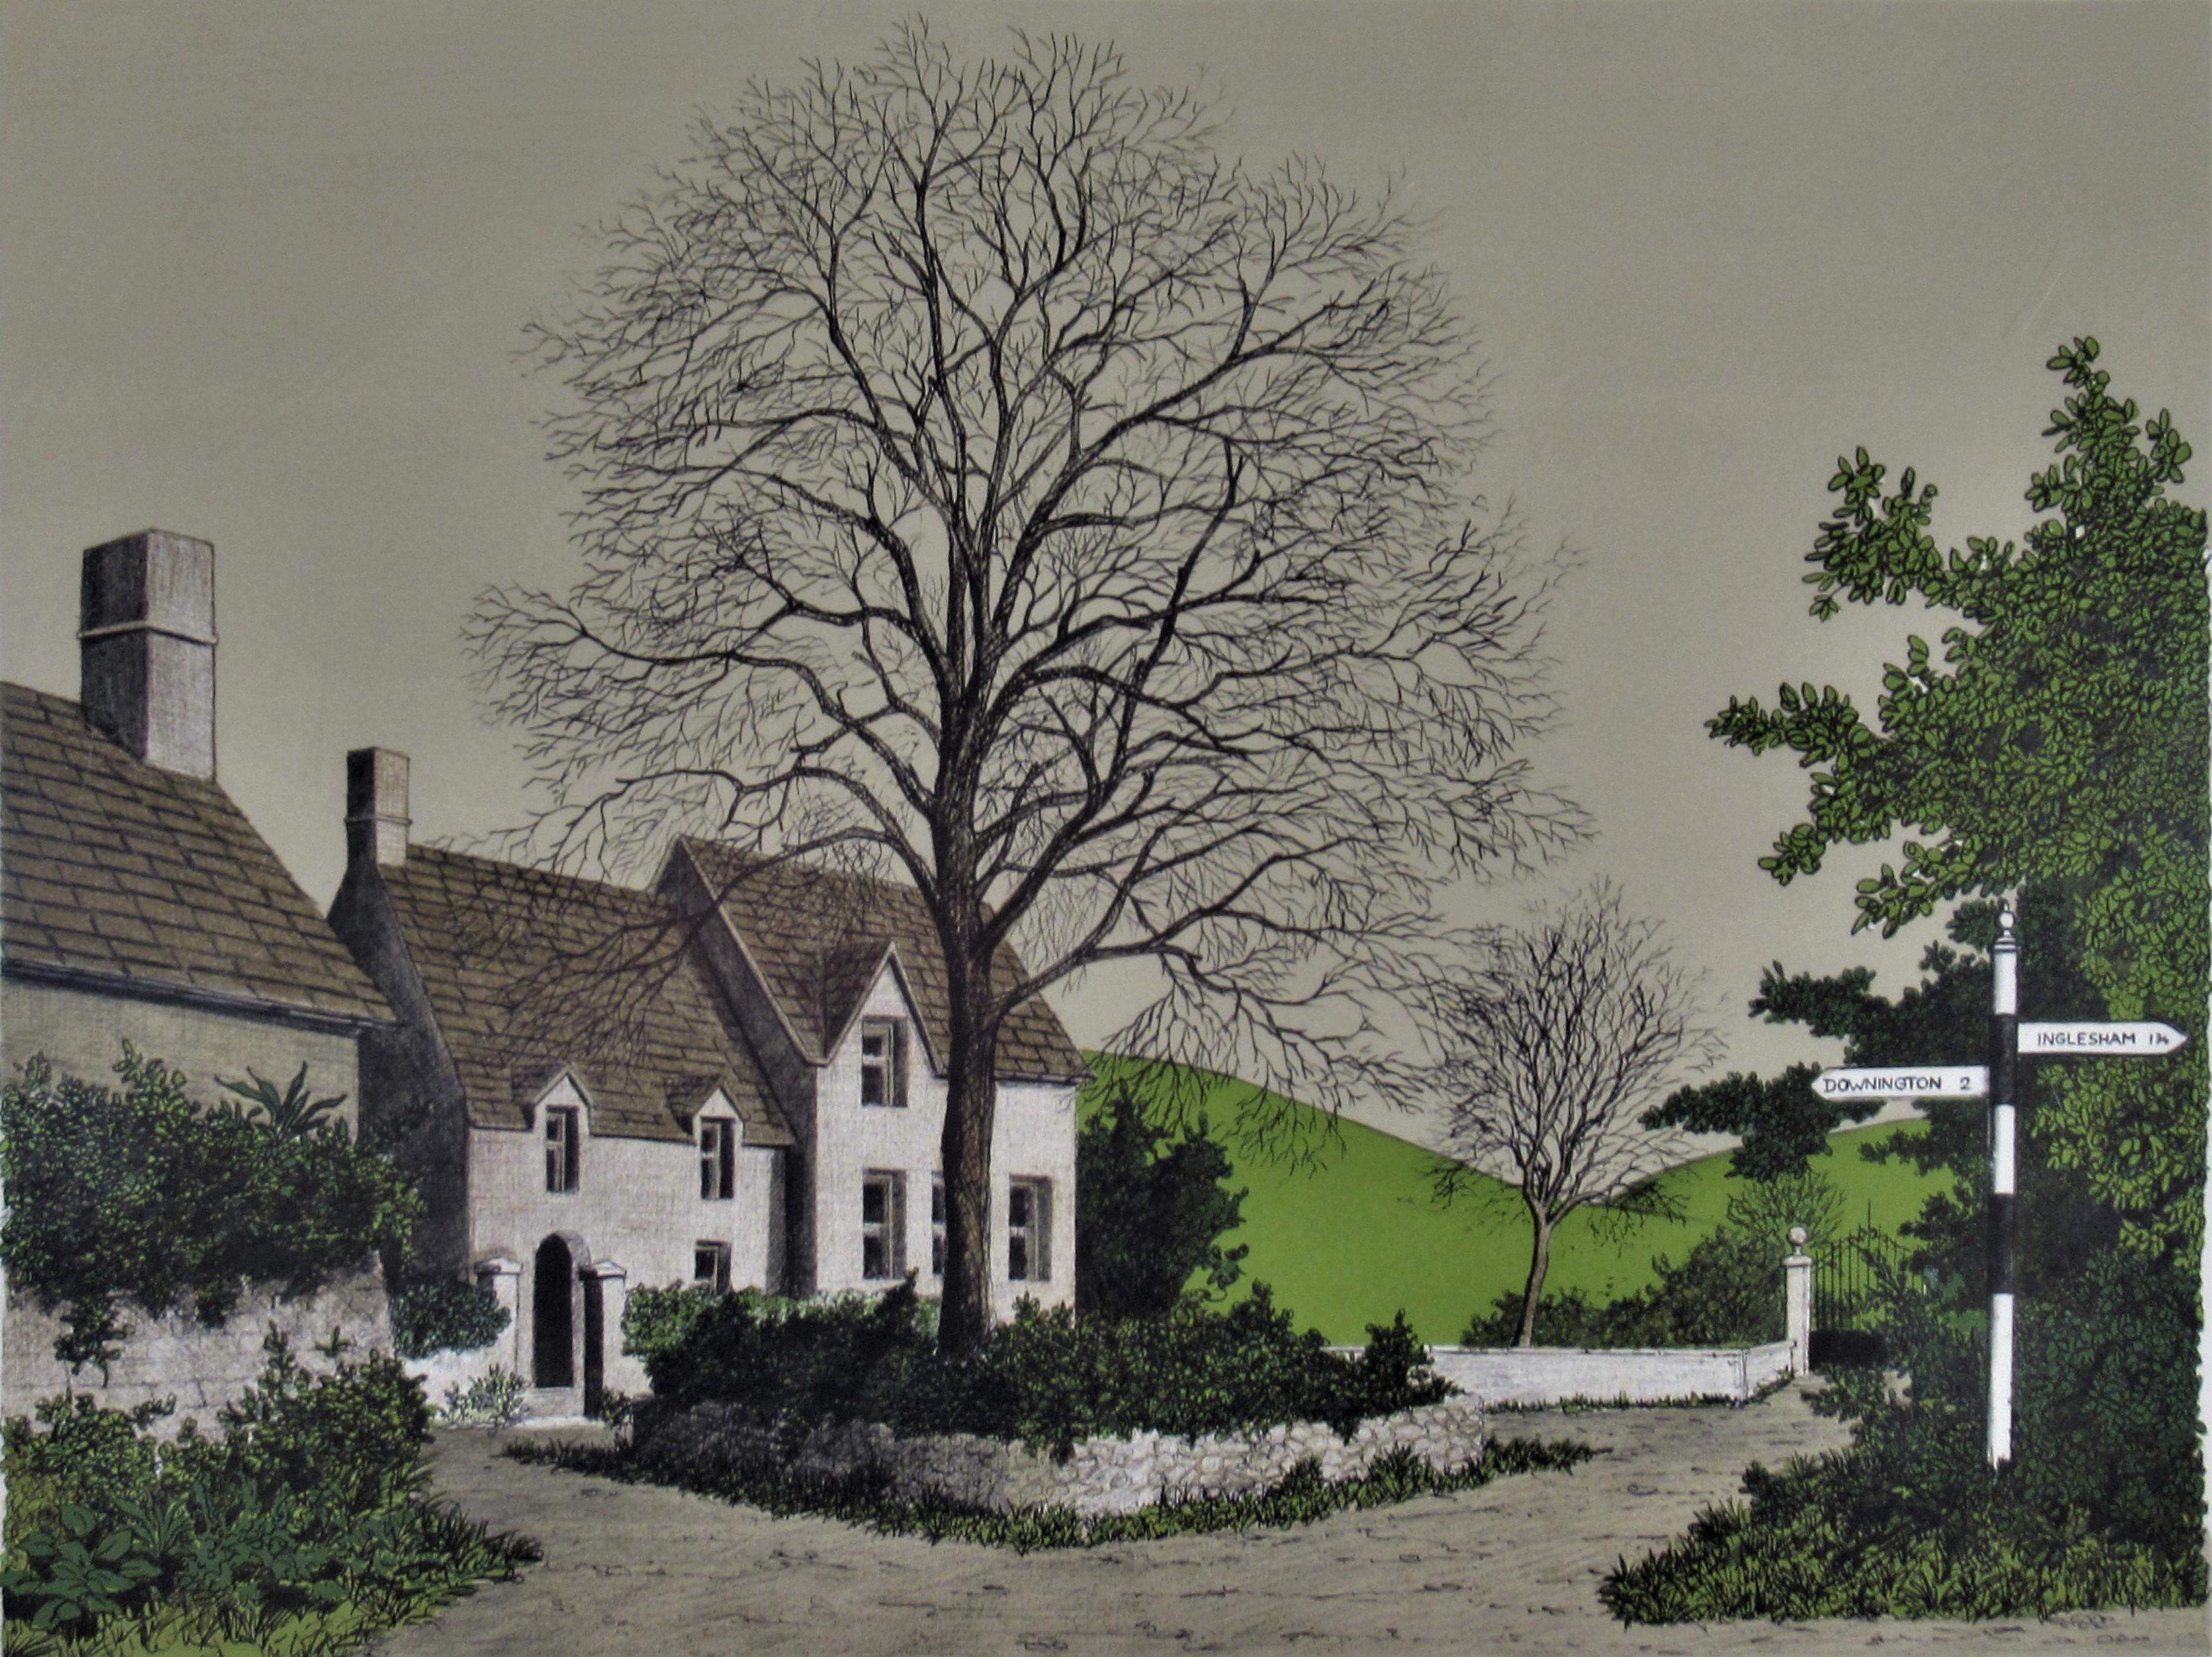 Downington/Inglesham - Print de Denis Paul Noyer